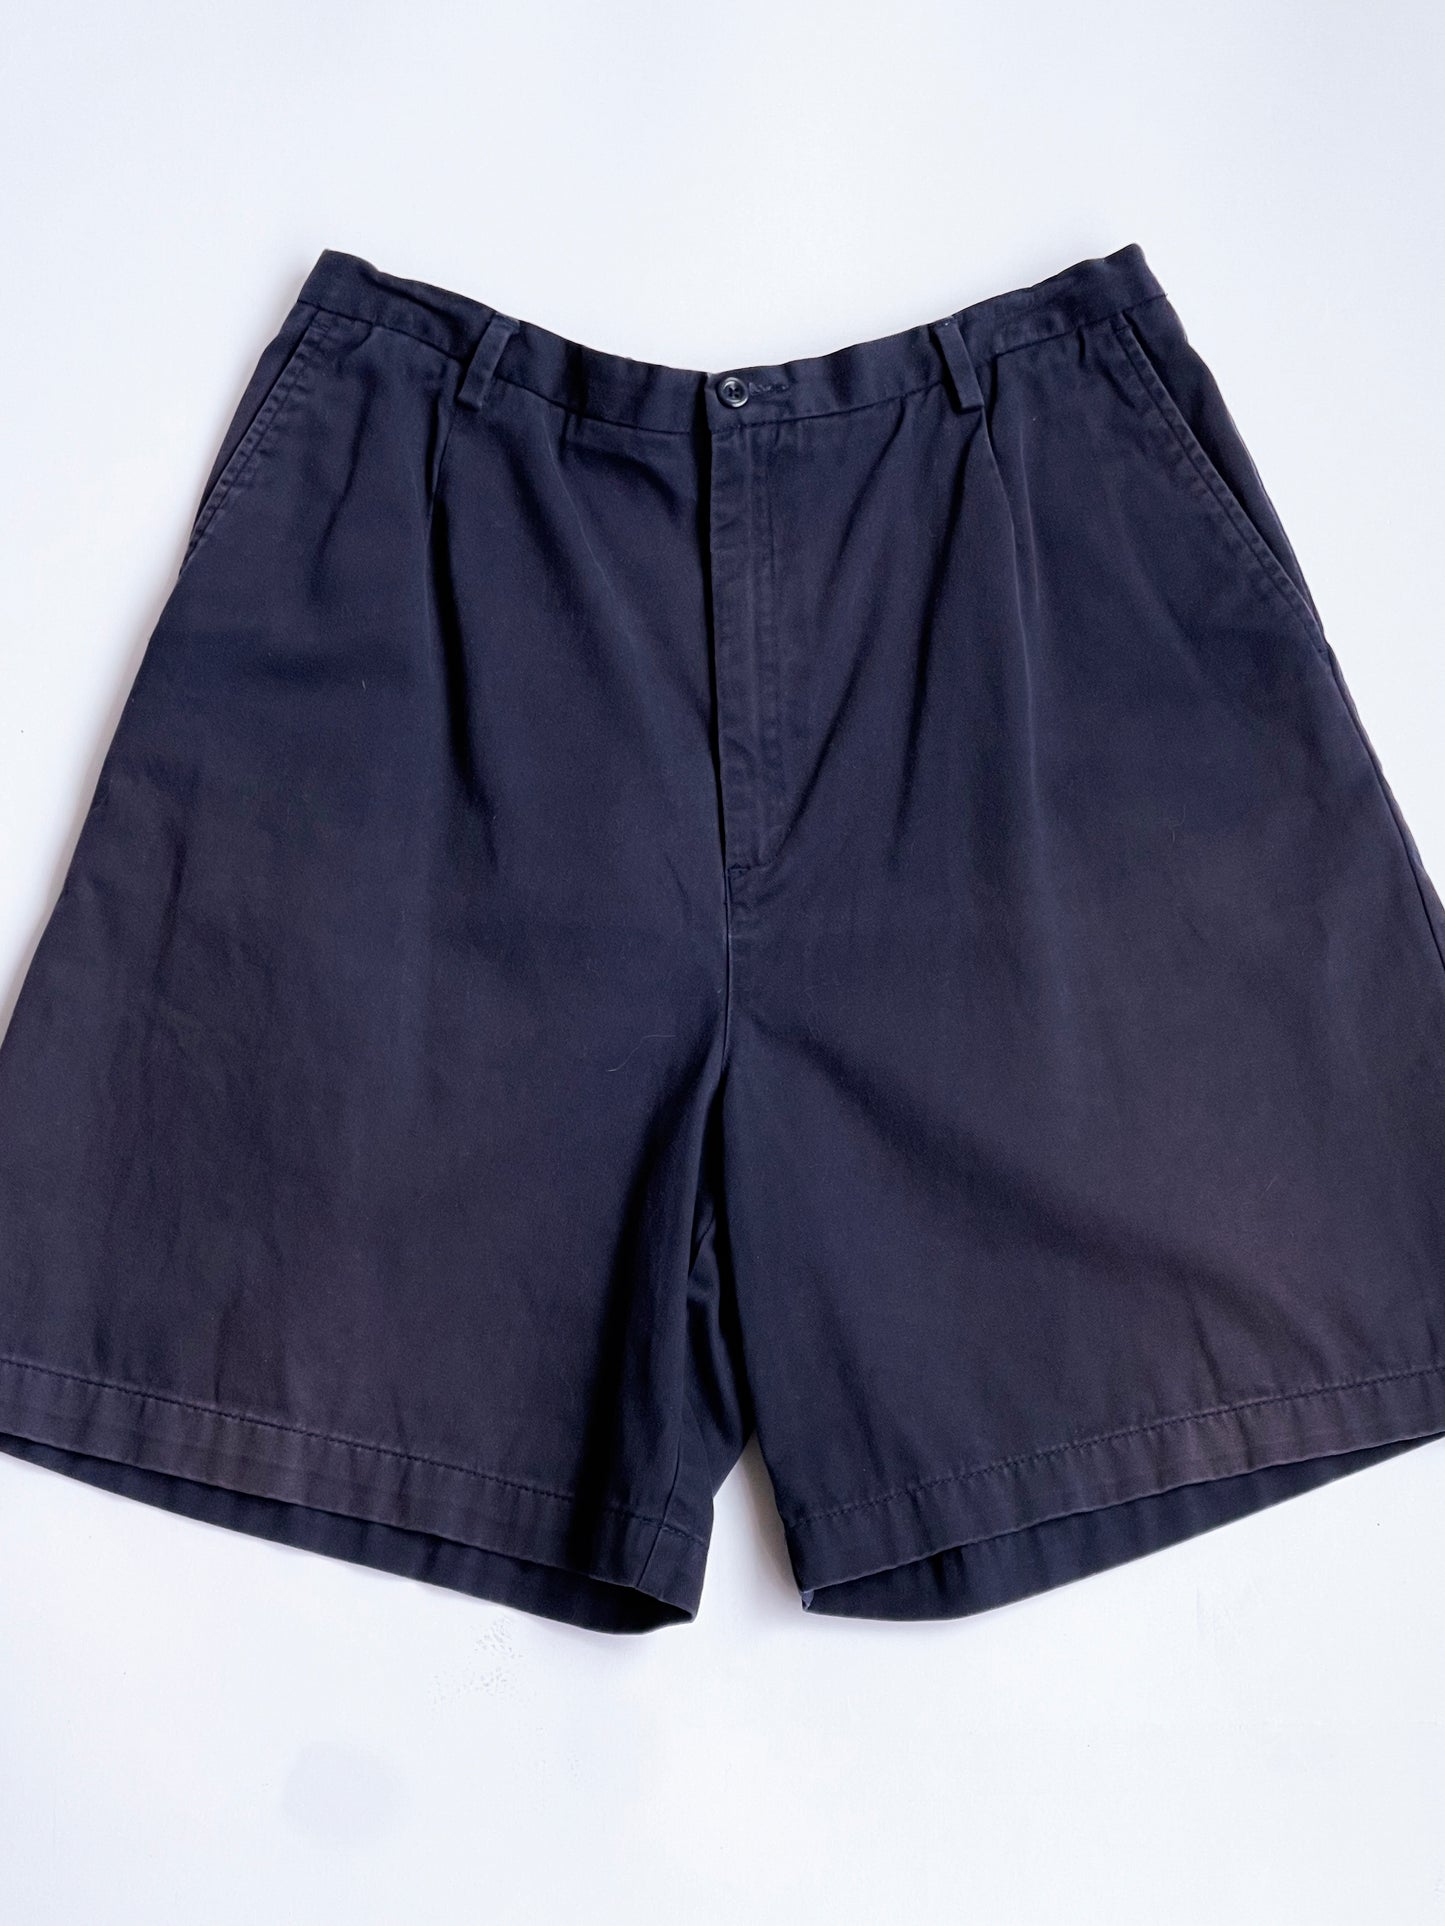 Vintage Navy Chino Shorts - 30" / 32" W